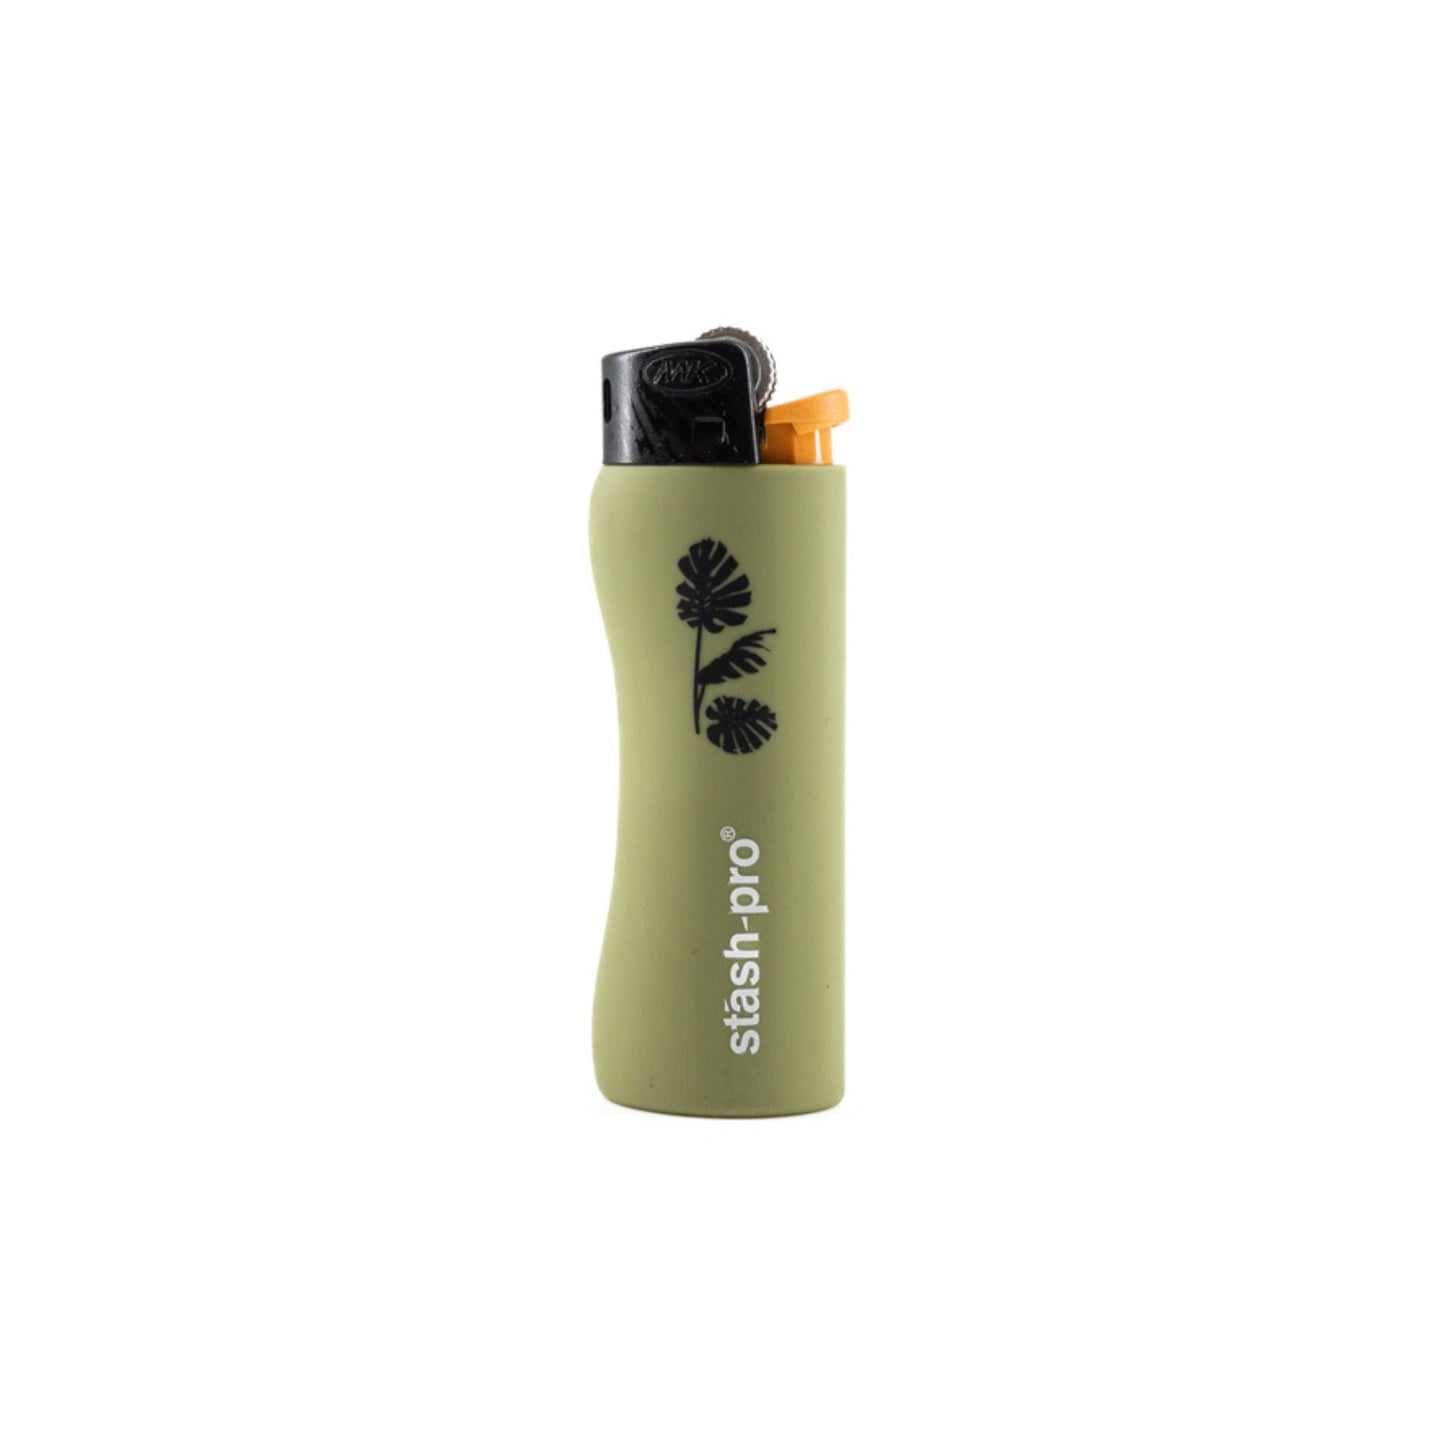 Stash-Pro Pocket Lighter Olive green